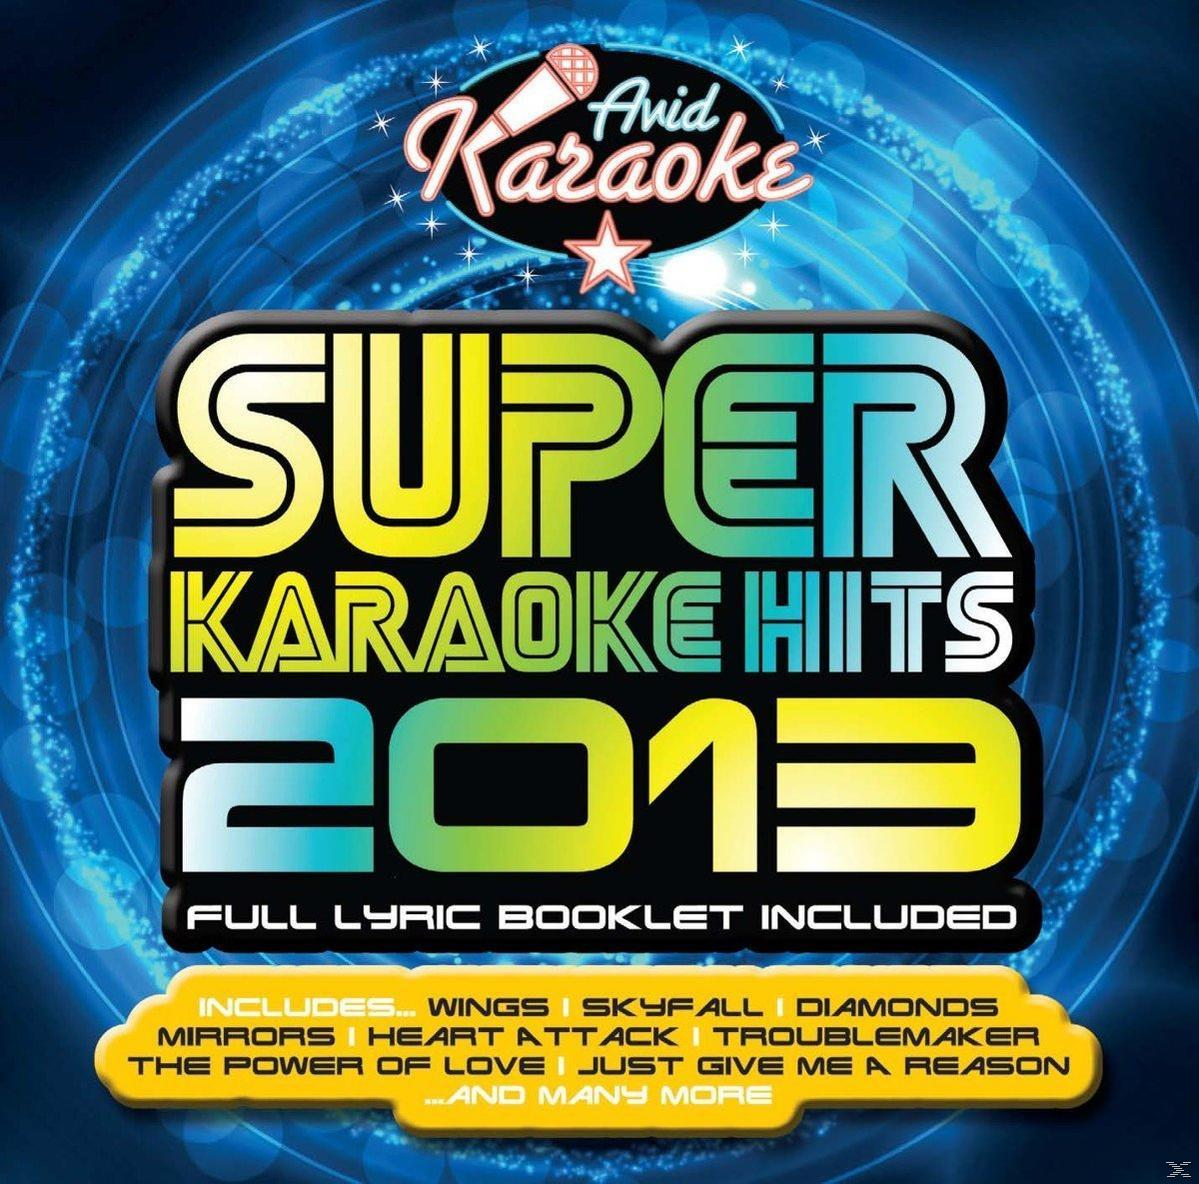 Unknown Artist Super Hits - 2013 (CD) - Karaoke